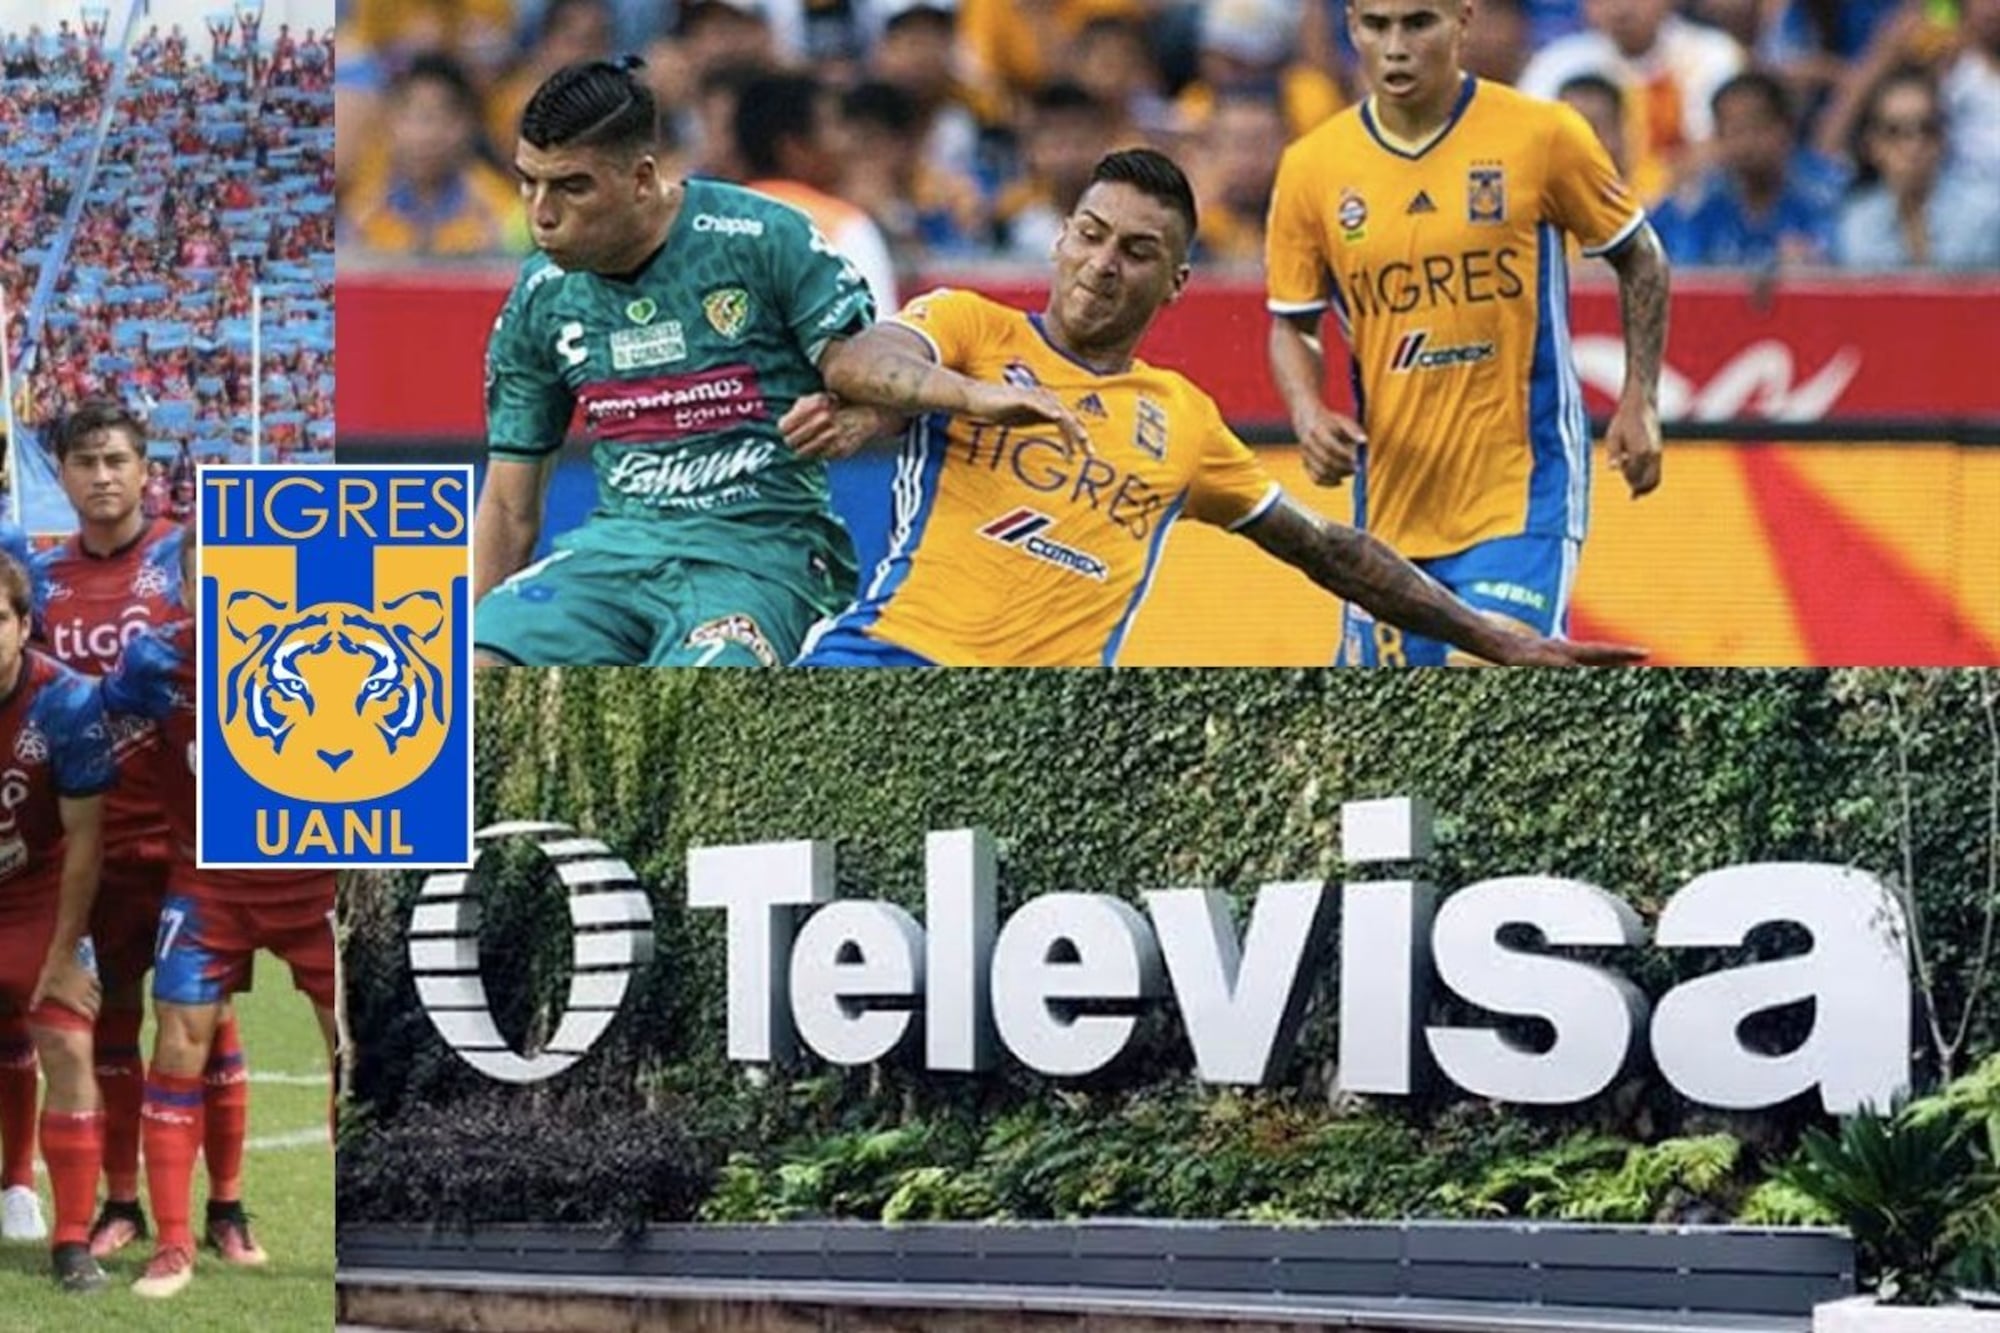 En Tigres fracasó, Televisa lo infló en América y ahora juega en El Salvador